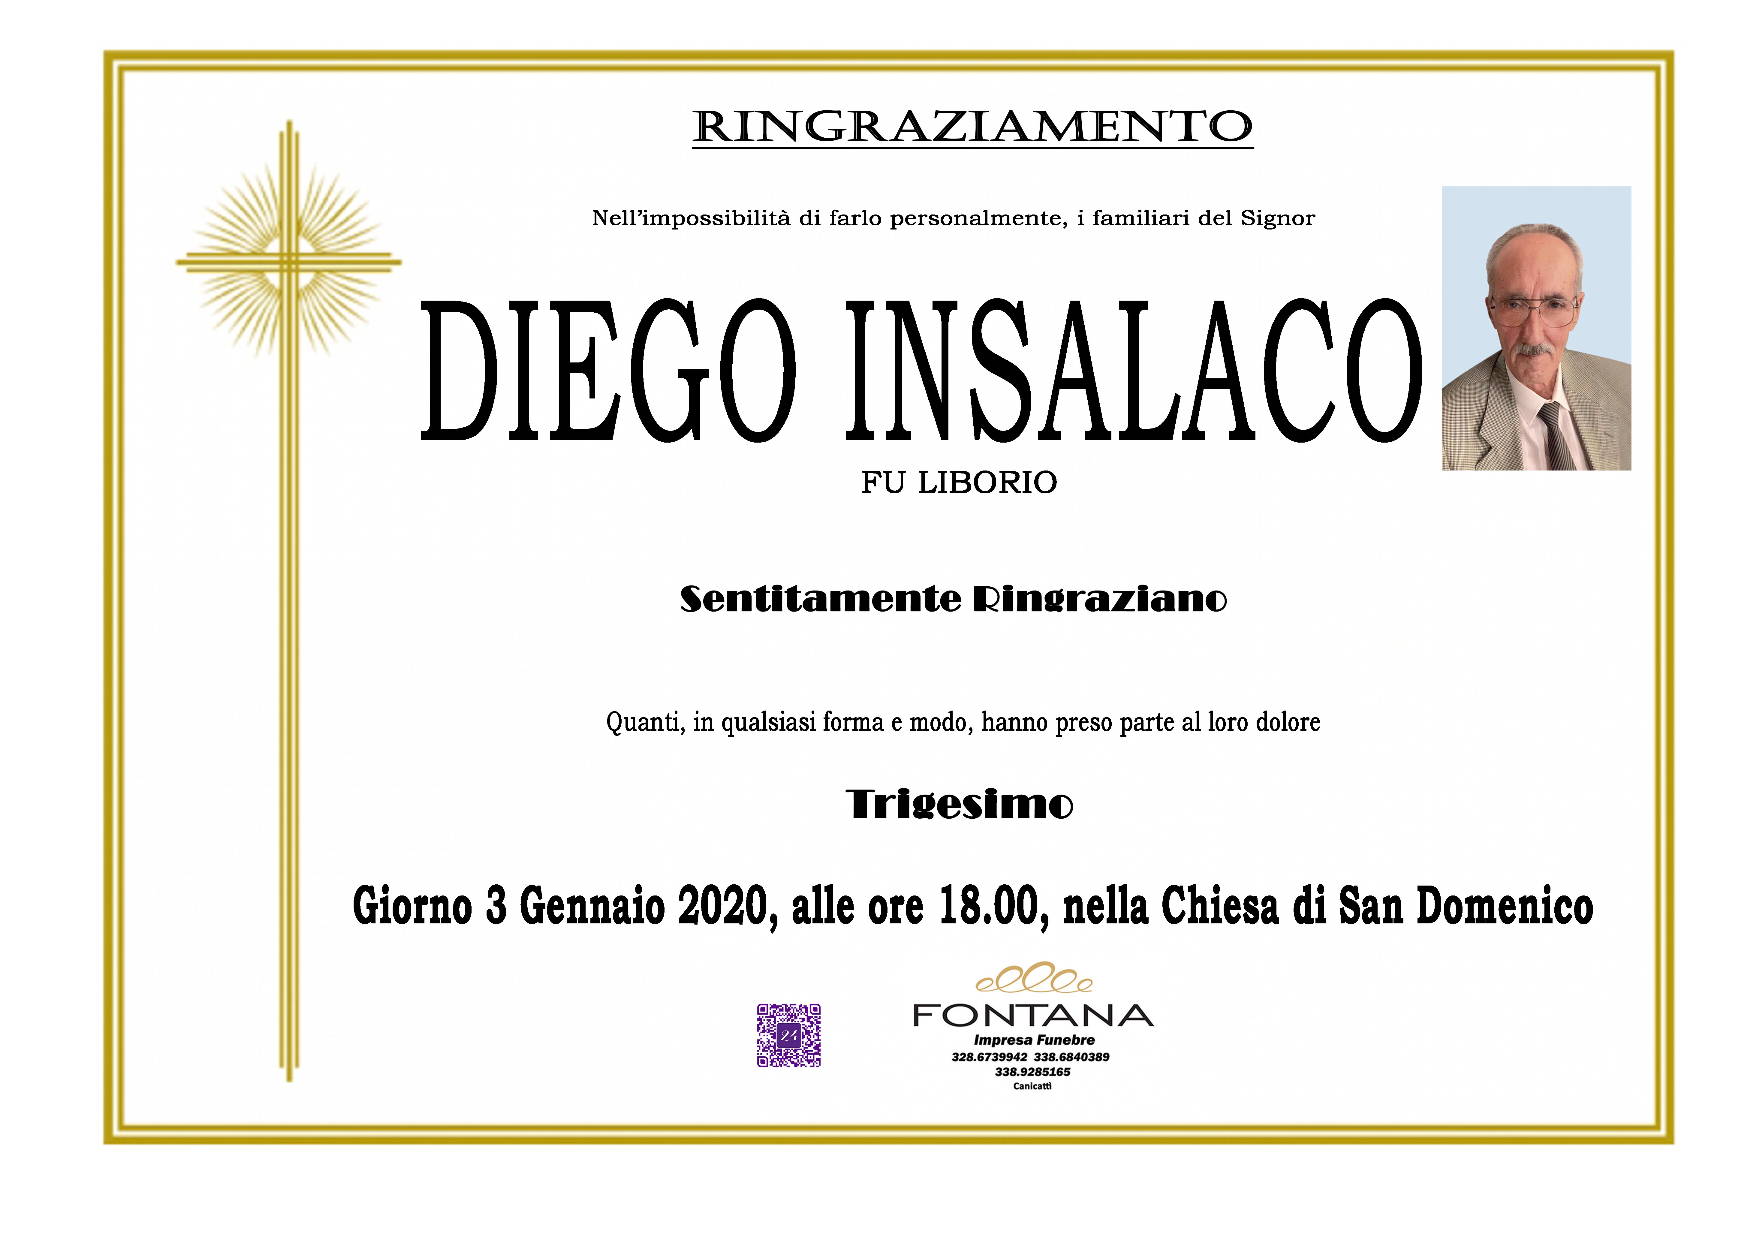 Diego Insalaco